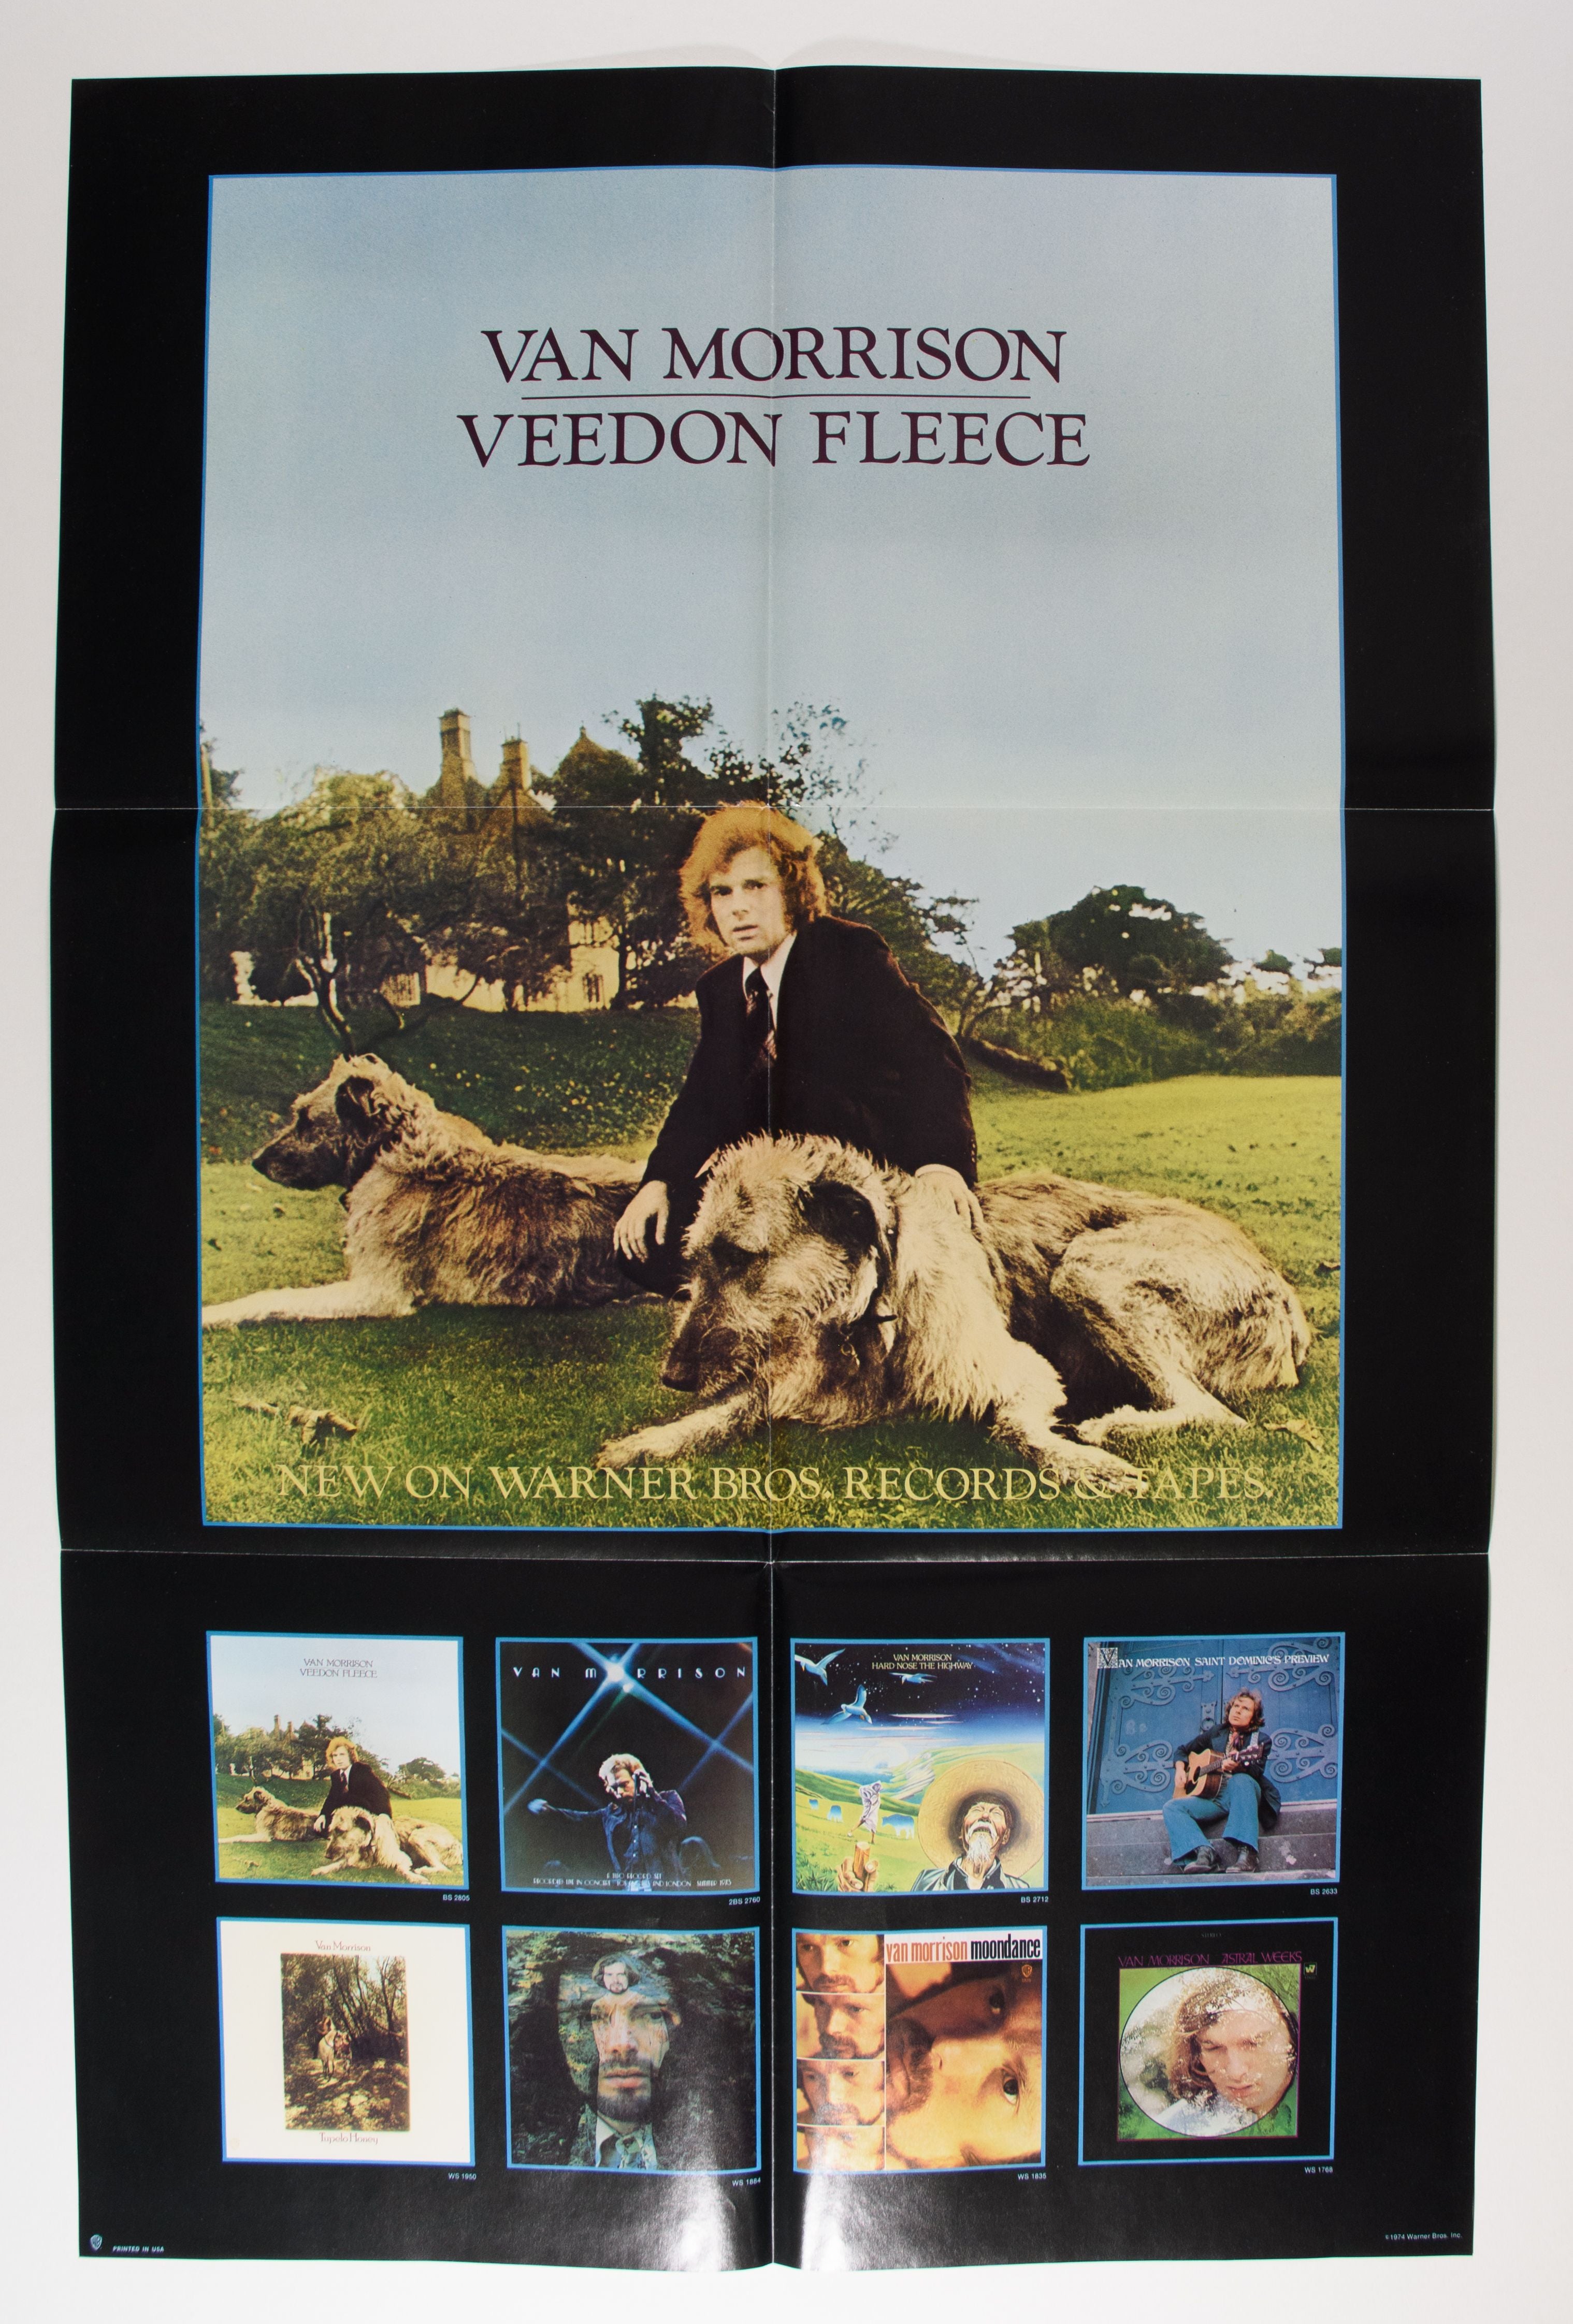 1974-Warner Brothers Album Promo Poster-Van Morrison-Veedon Fleece